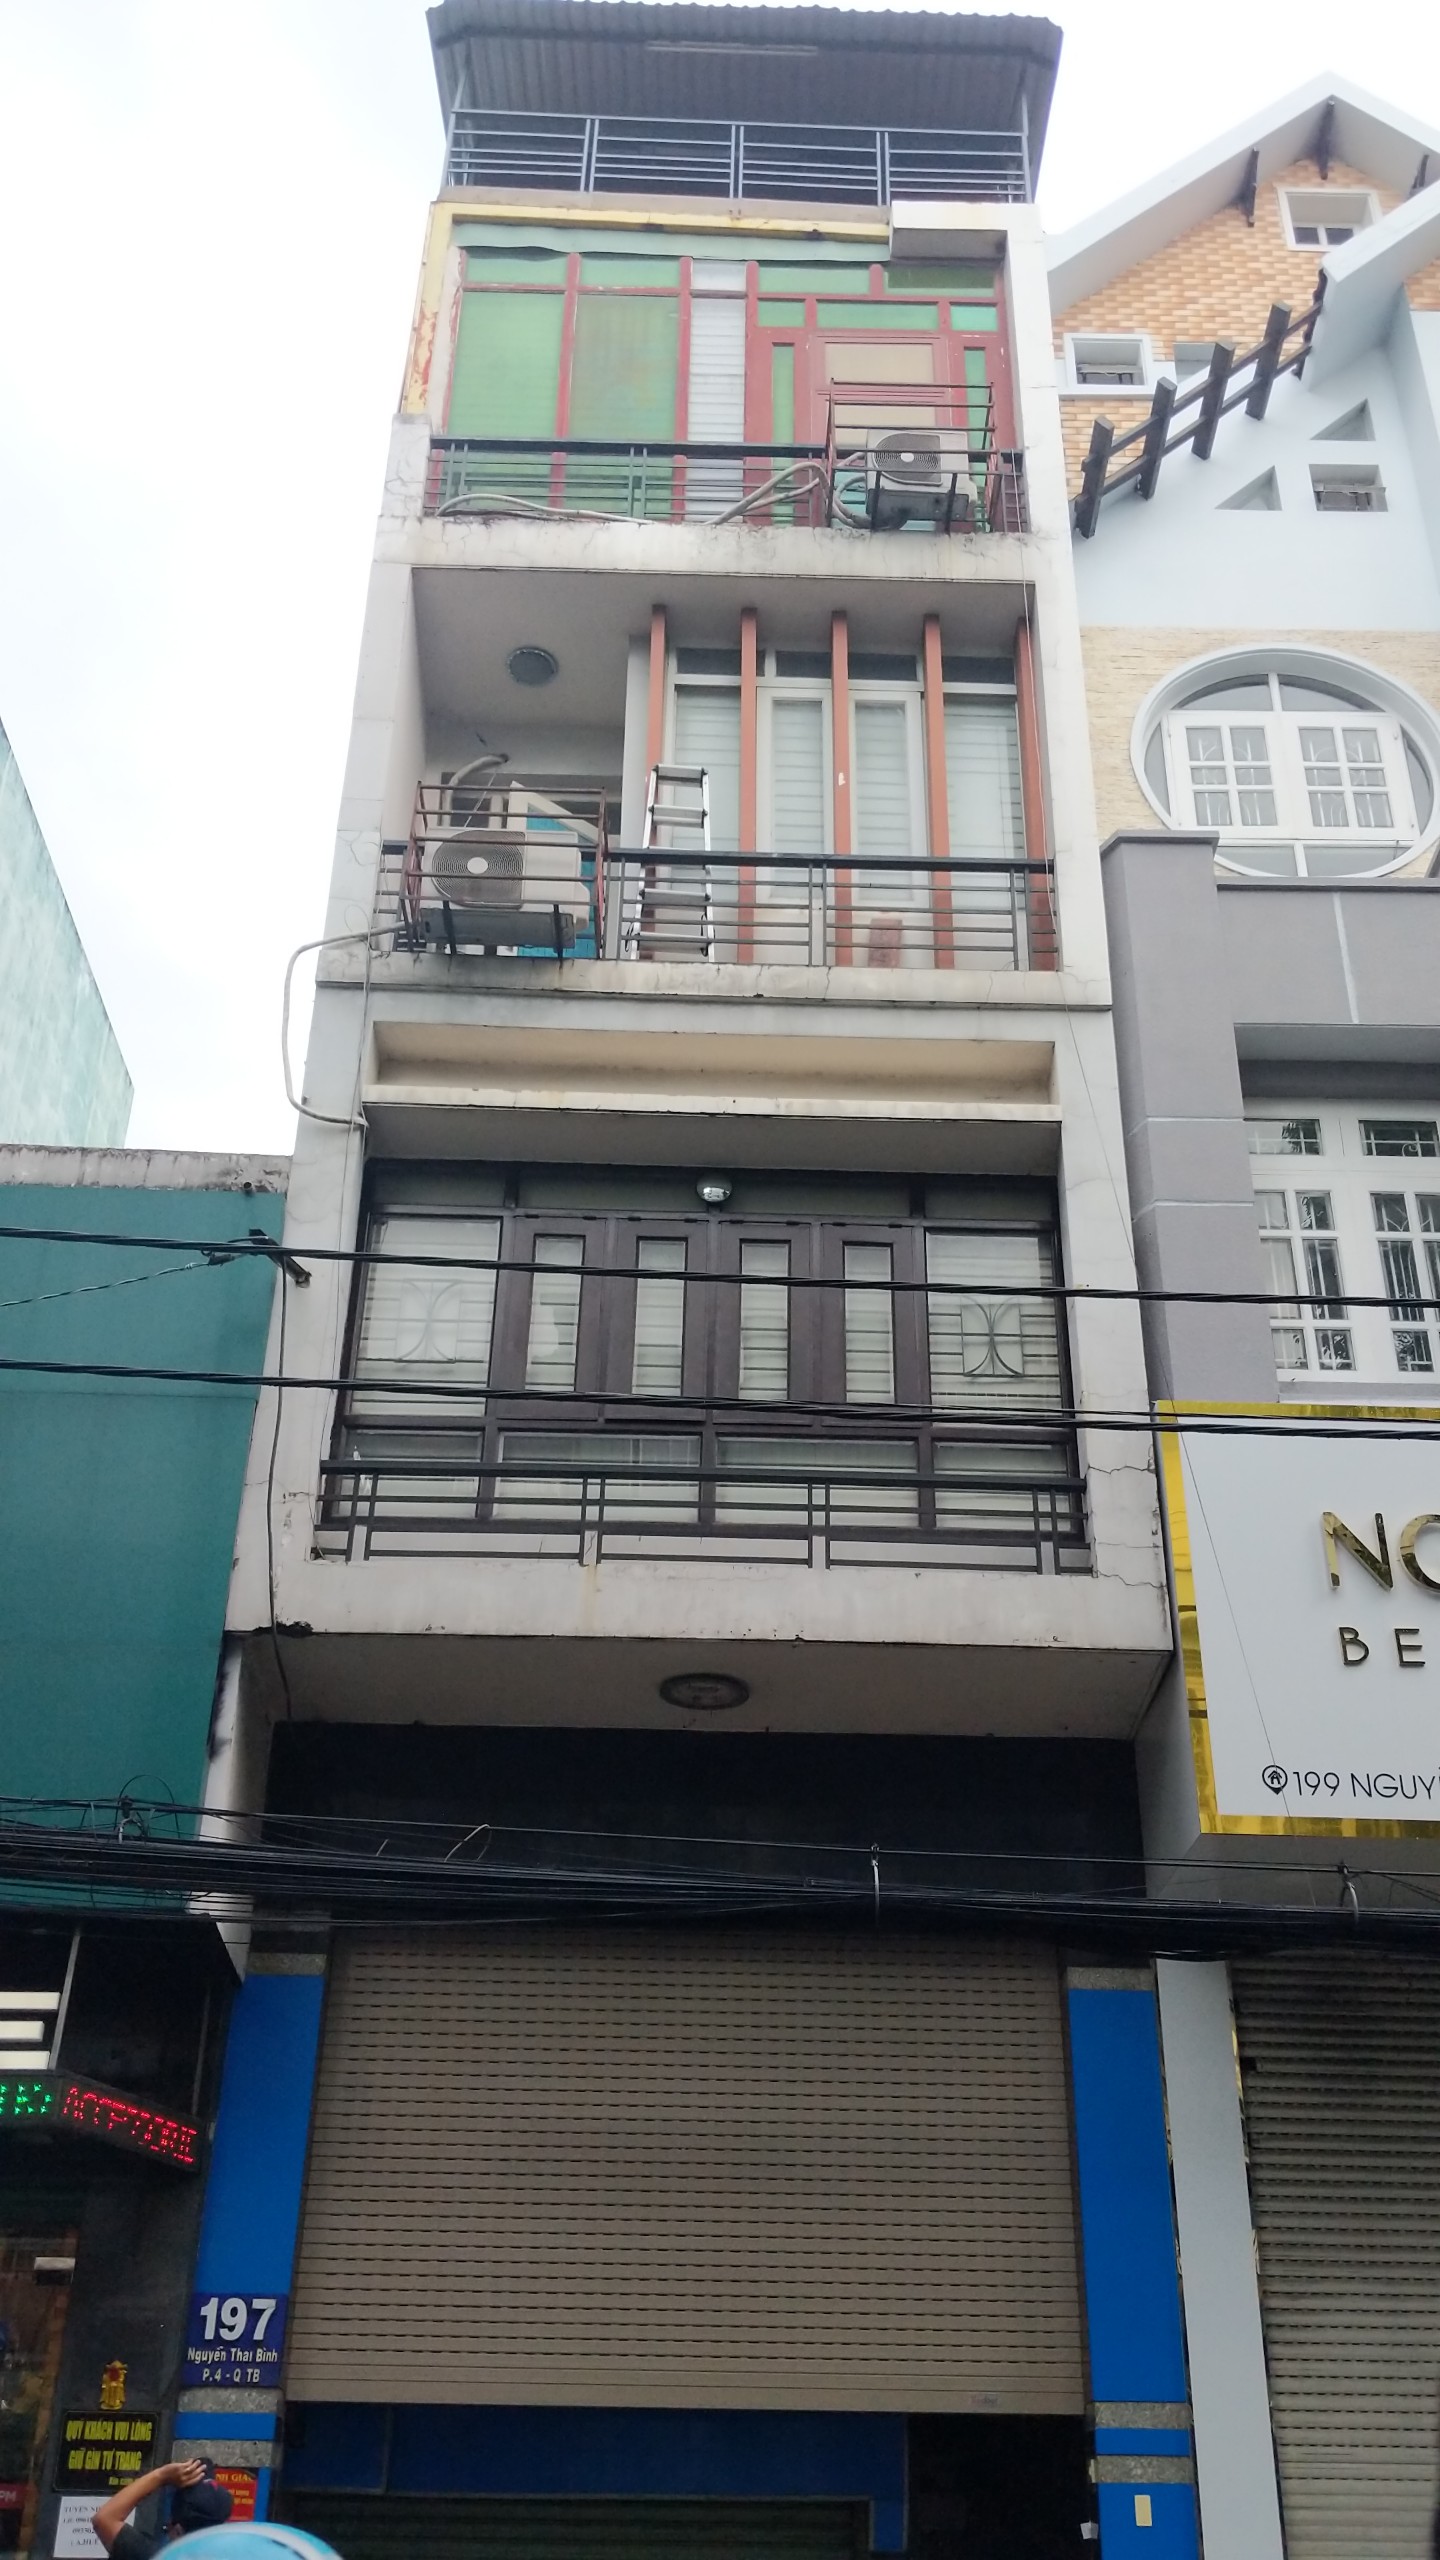  Bán nhà MT  khu K300 - Nguyễn Minh Hoàng, DT 4x20m, bán 13.5 tỷ đang cho thuê 30 triệu/tháng